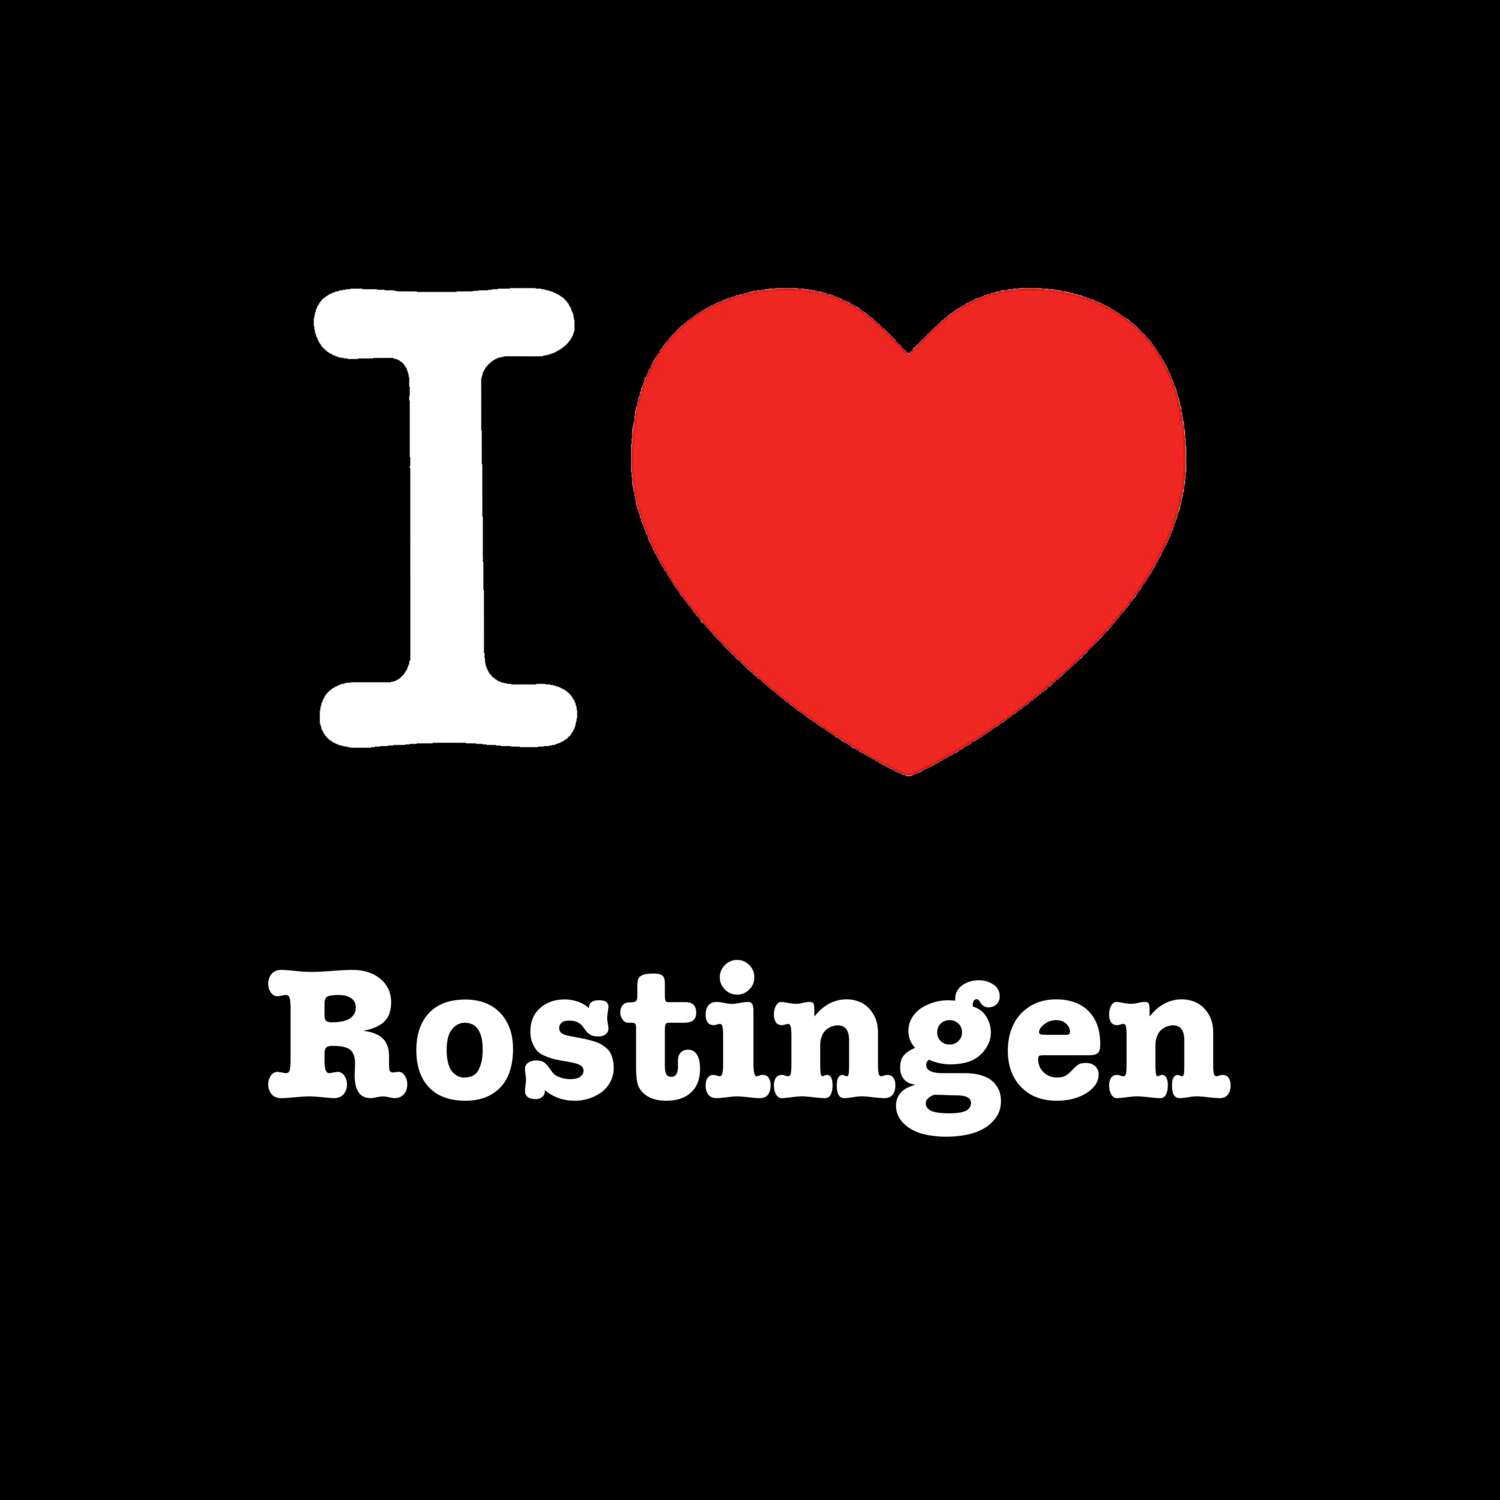 Rostingen T-Shirt »I love«